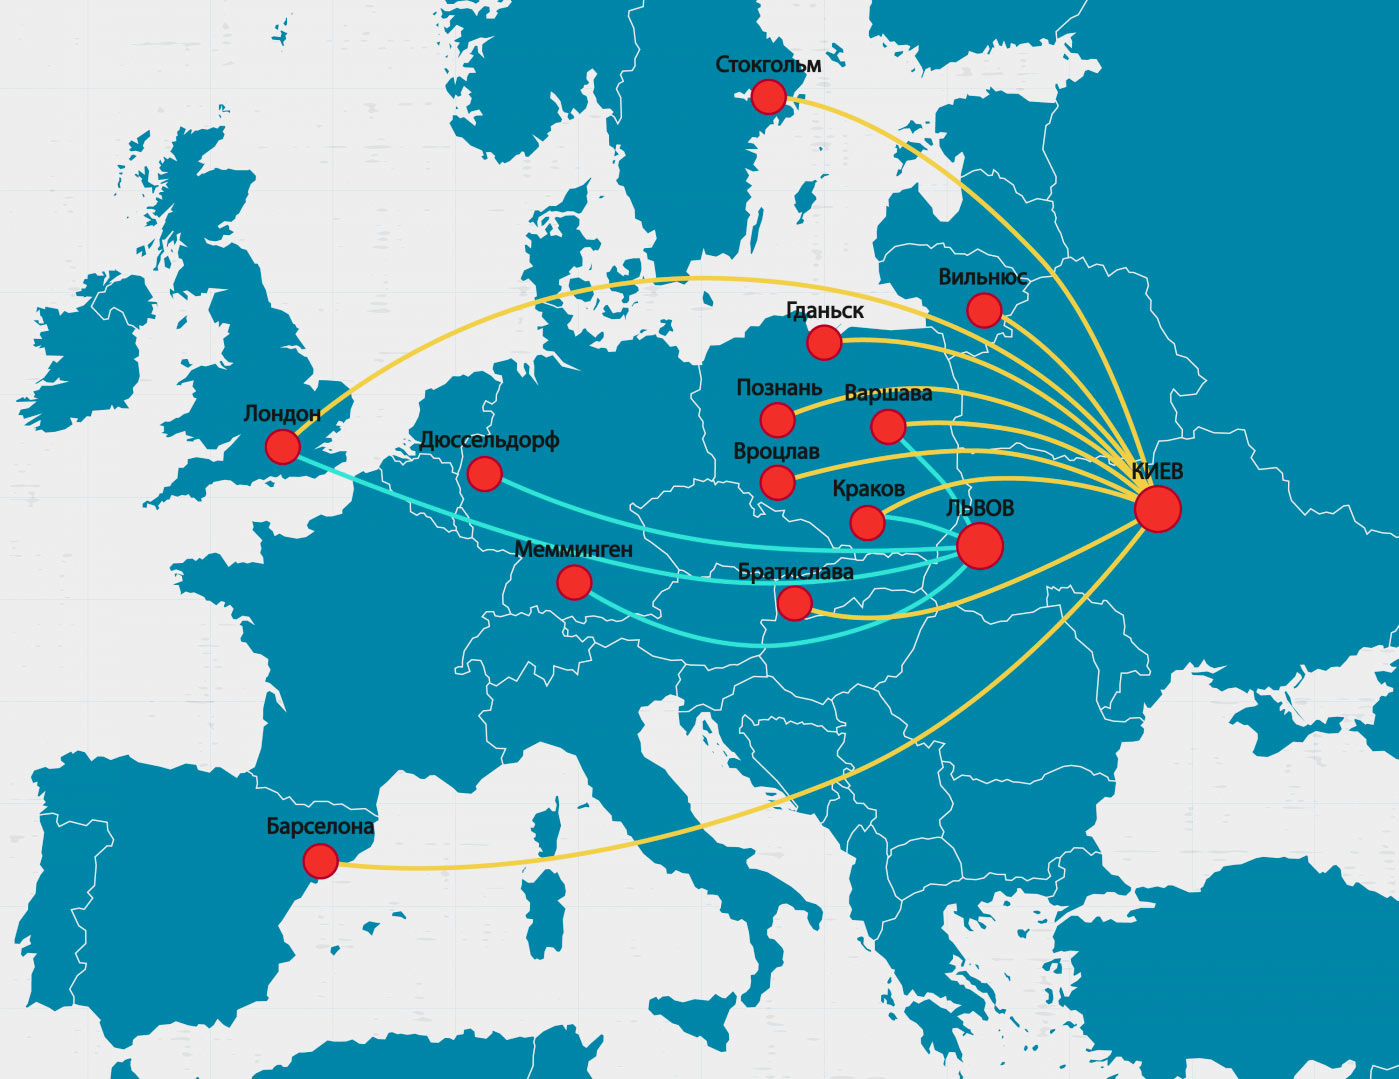 15 новых маршрутов Ryanair из Киева и Львова с октября 2018 года